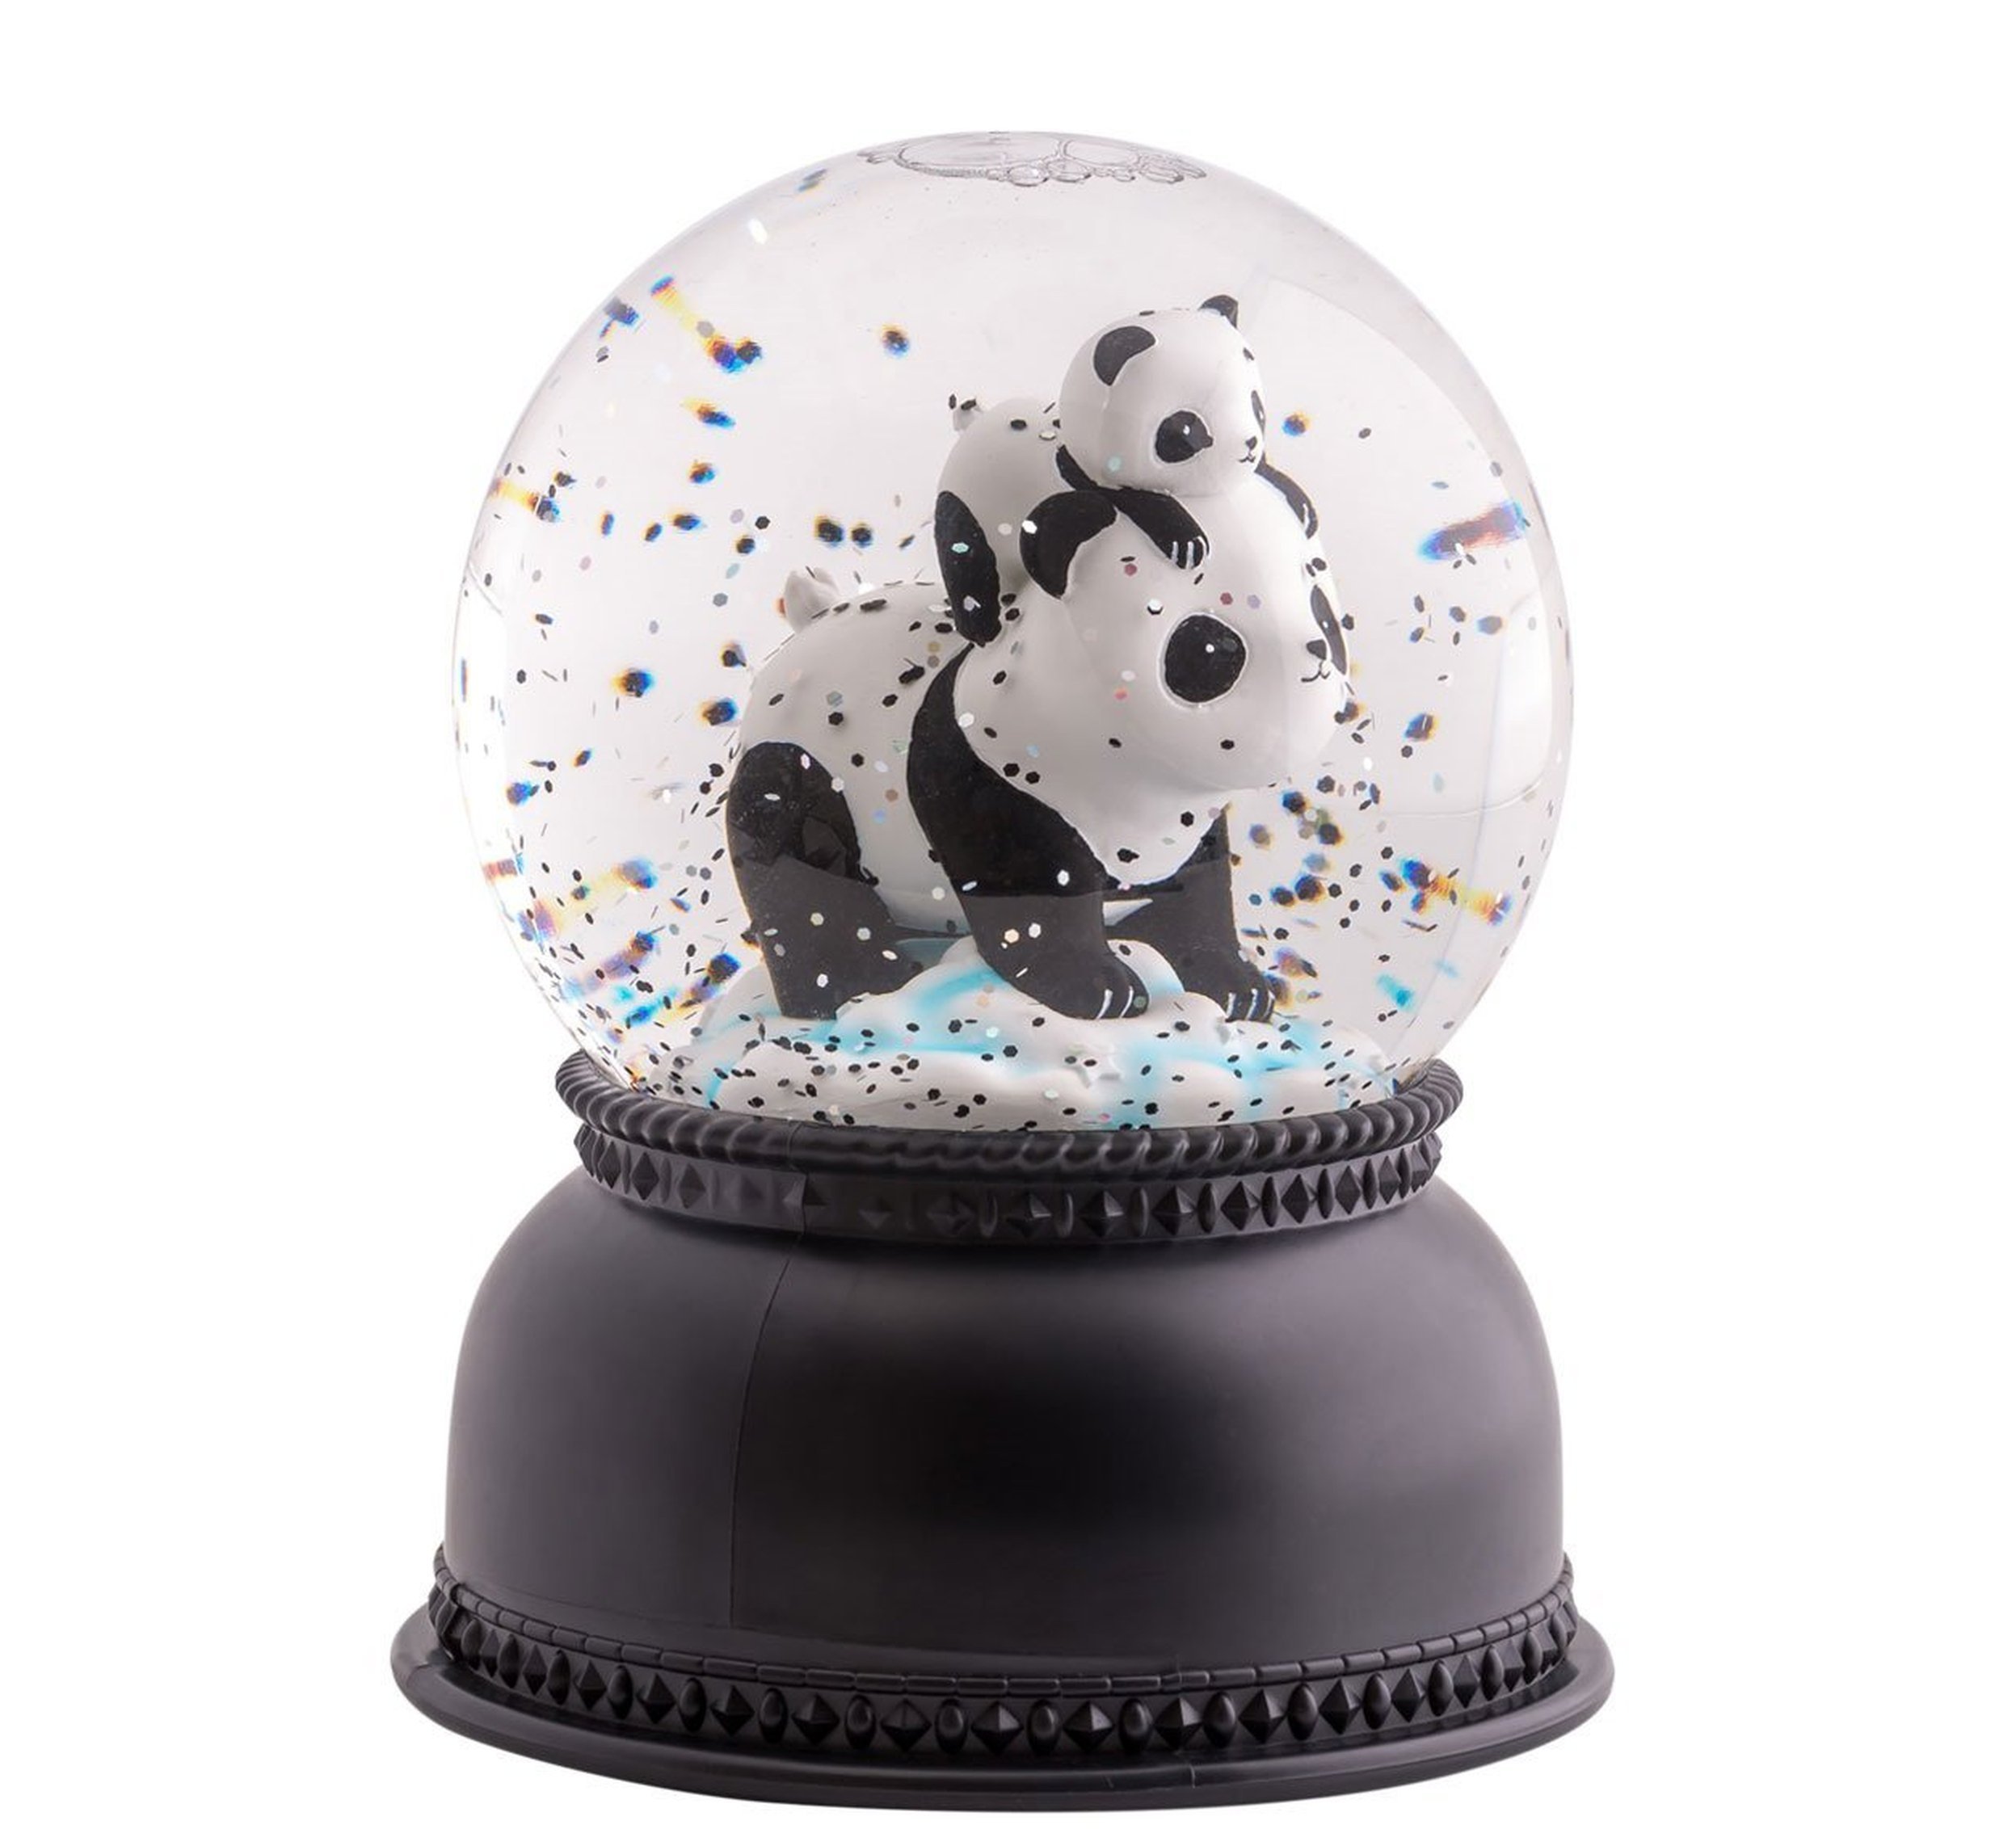 Snowglobe Light - Panda-Light-A Little Lovely Company-jellyfishkids.com.cy